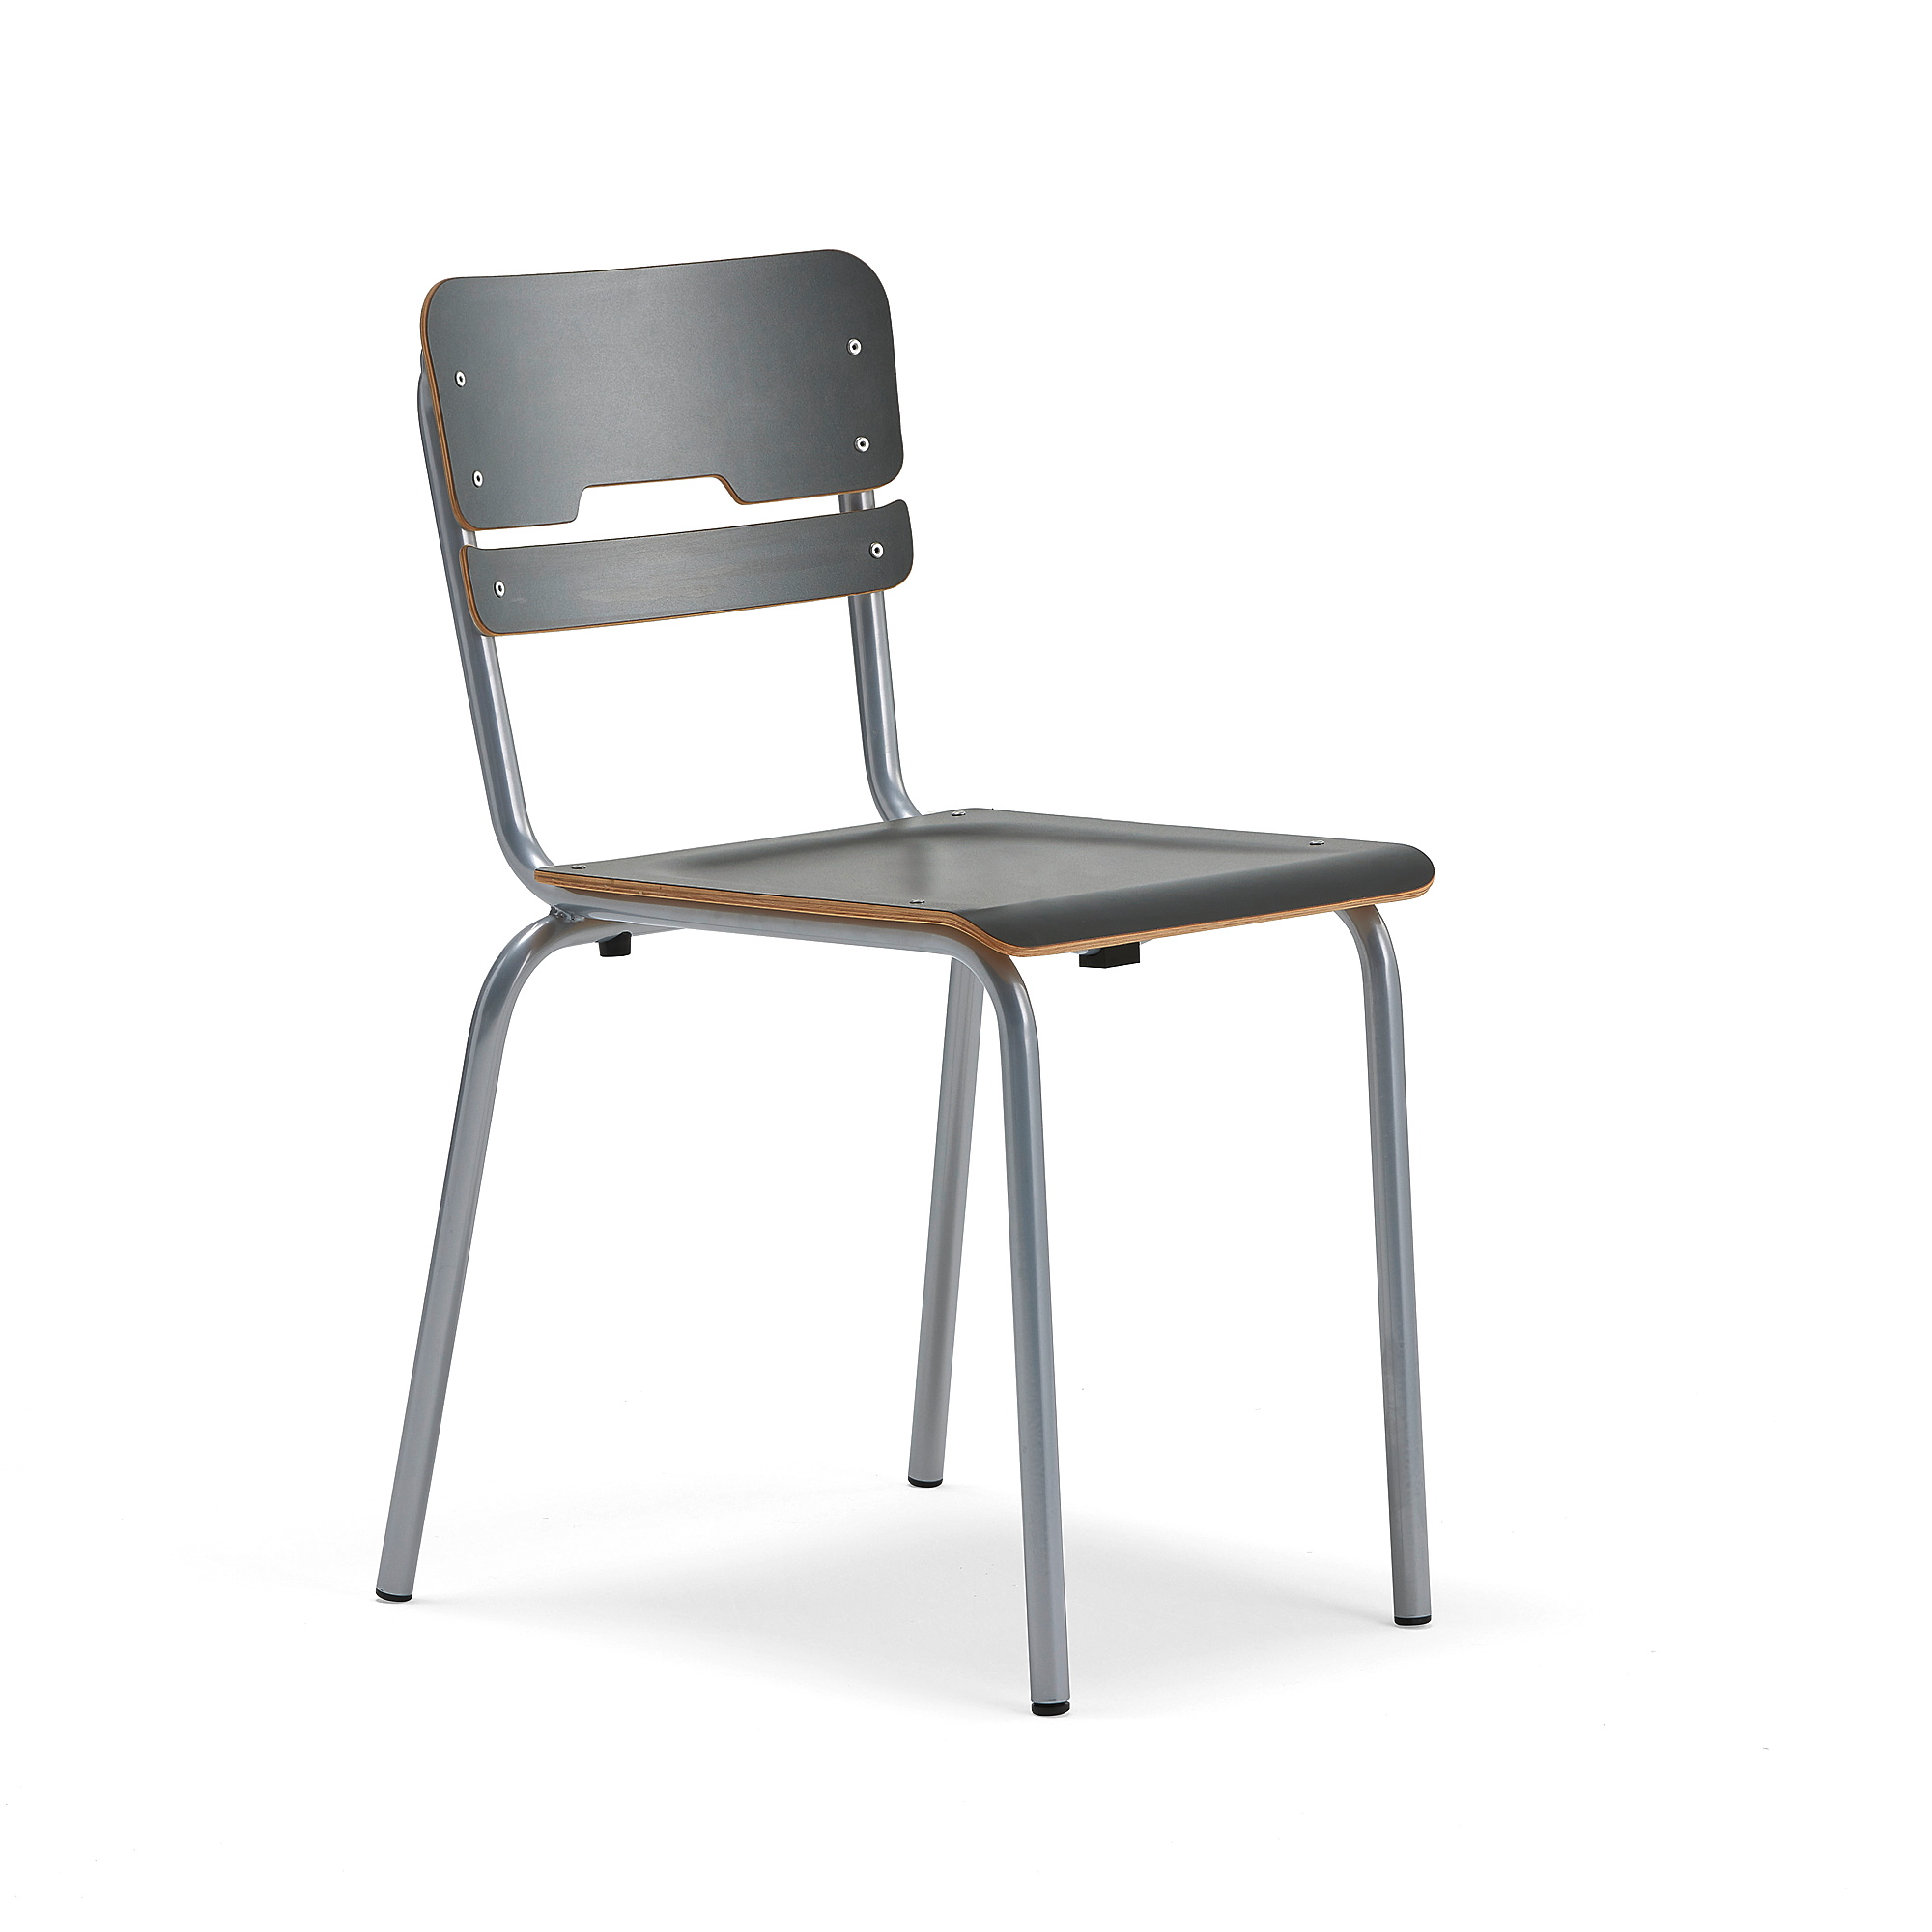 Školní židle SCIENTIA, sedák 390x390 mm, výška 460 mm, stříbrná/antracitová